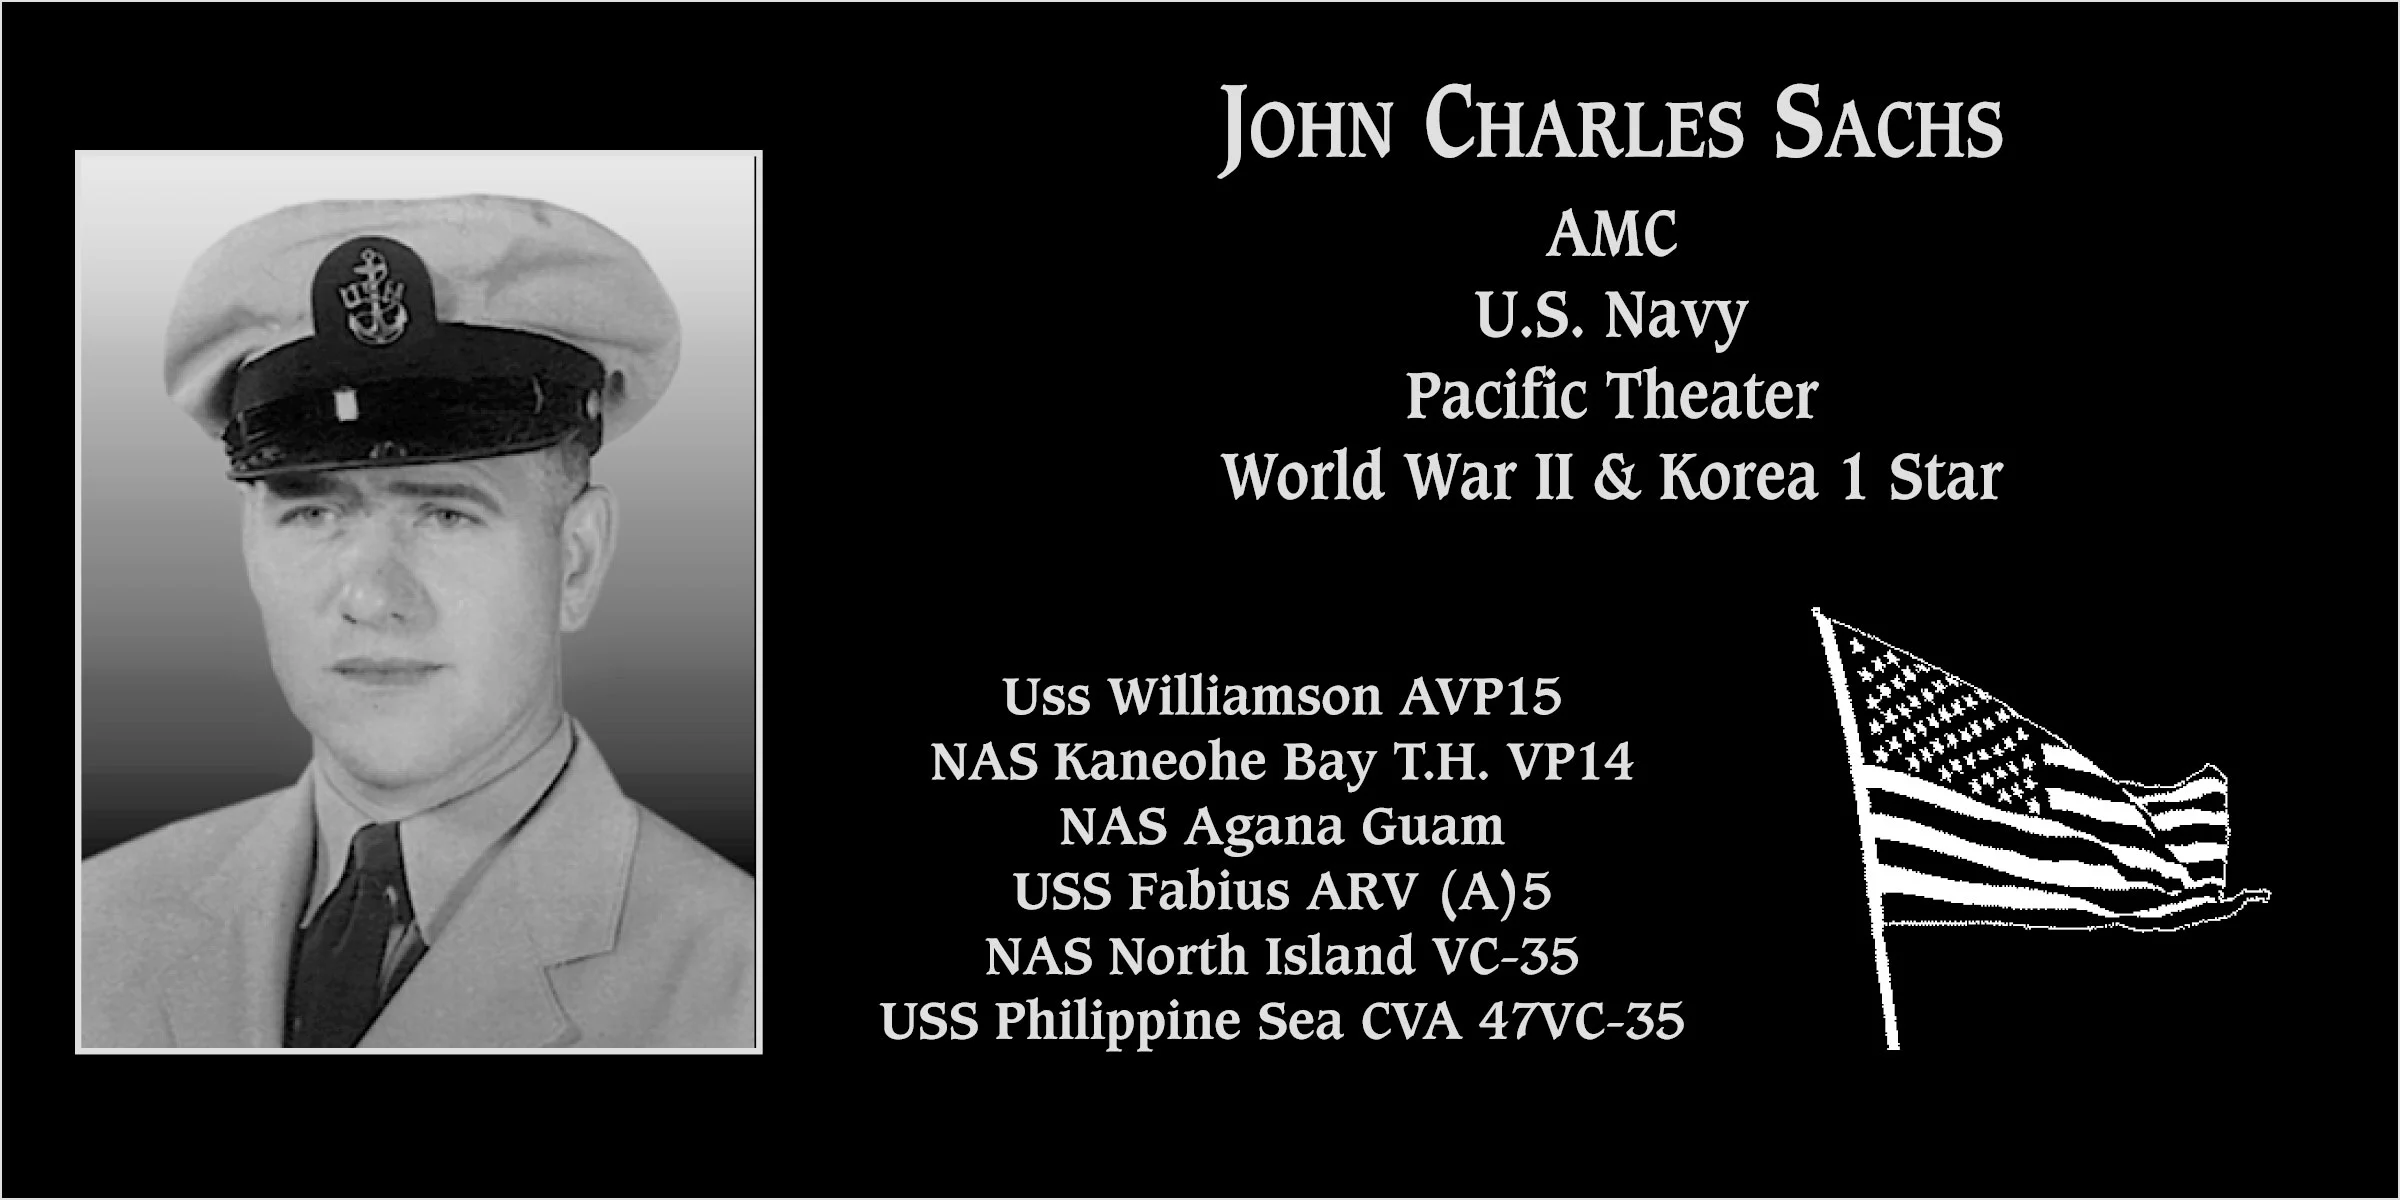 John Charles Sachs